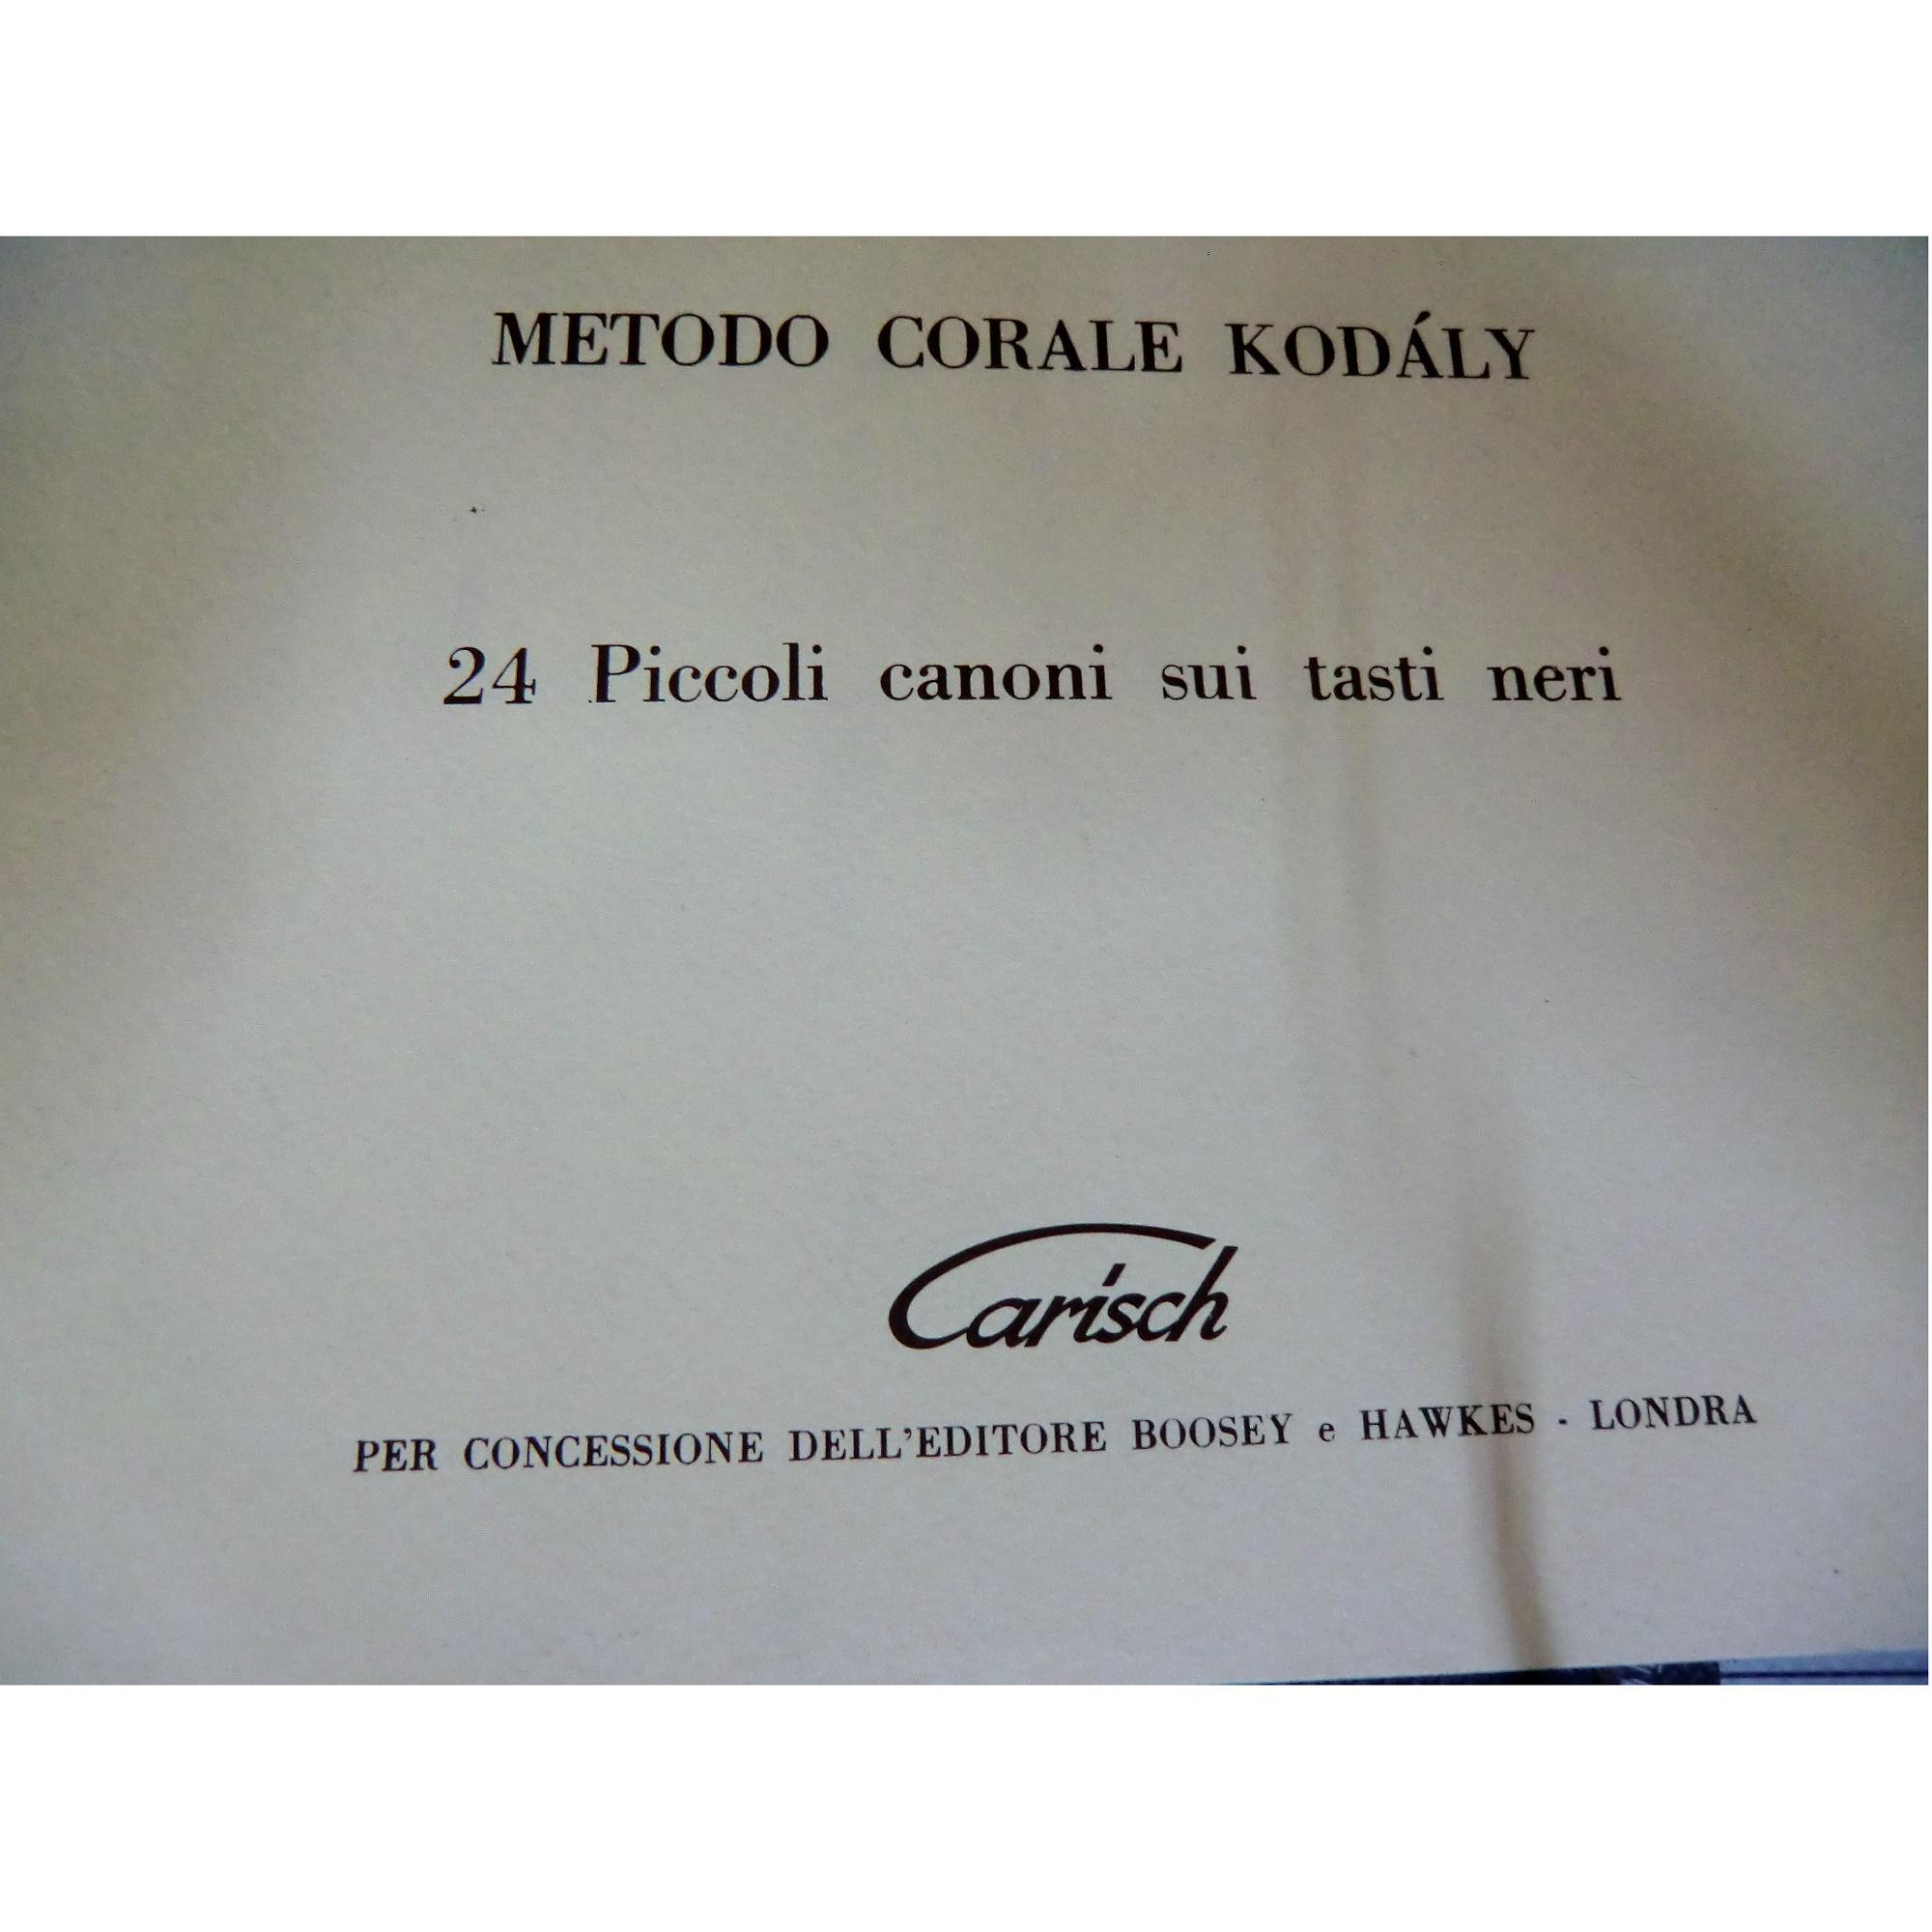 KodÃ ly metodo corale 24 Piccoli canoni sui tasti neri - Carisch 